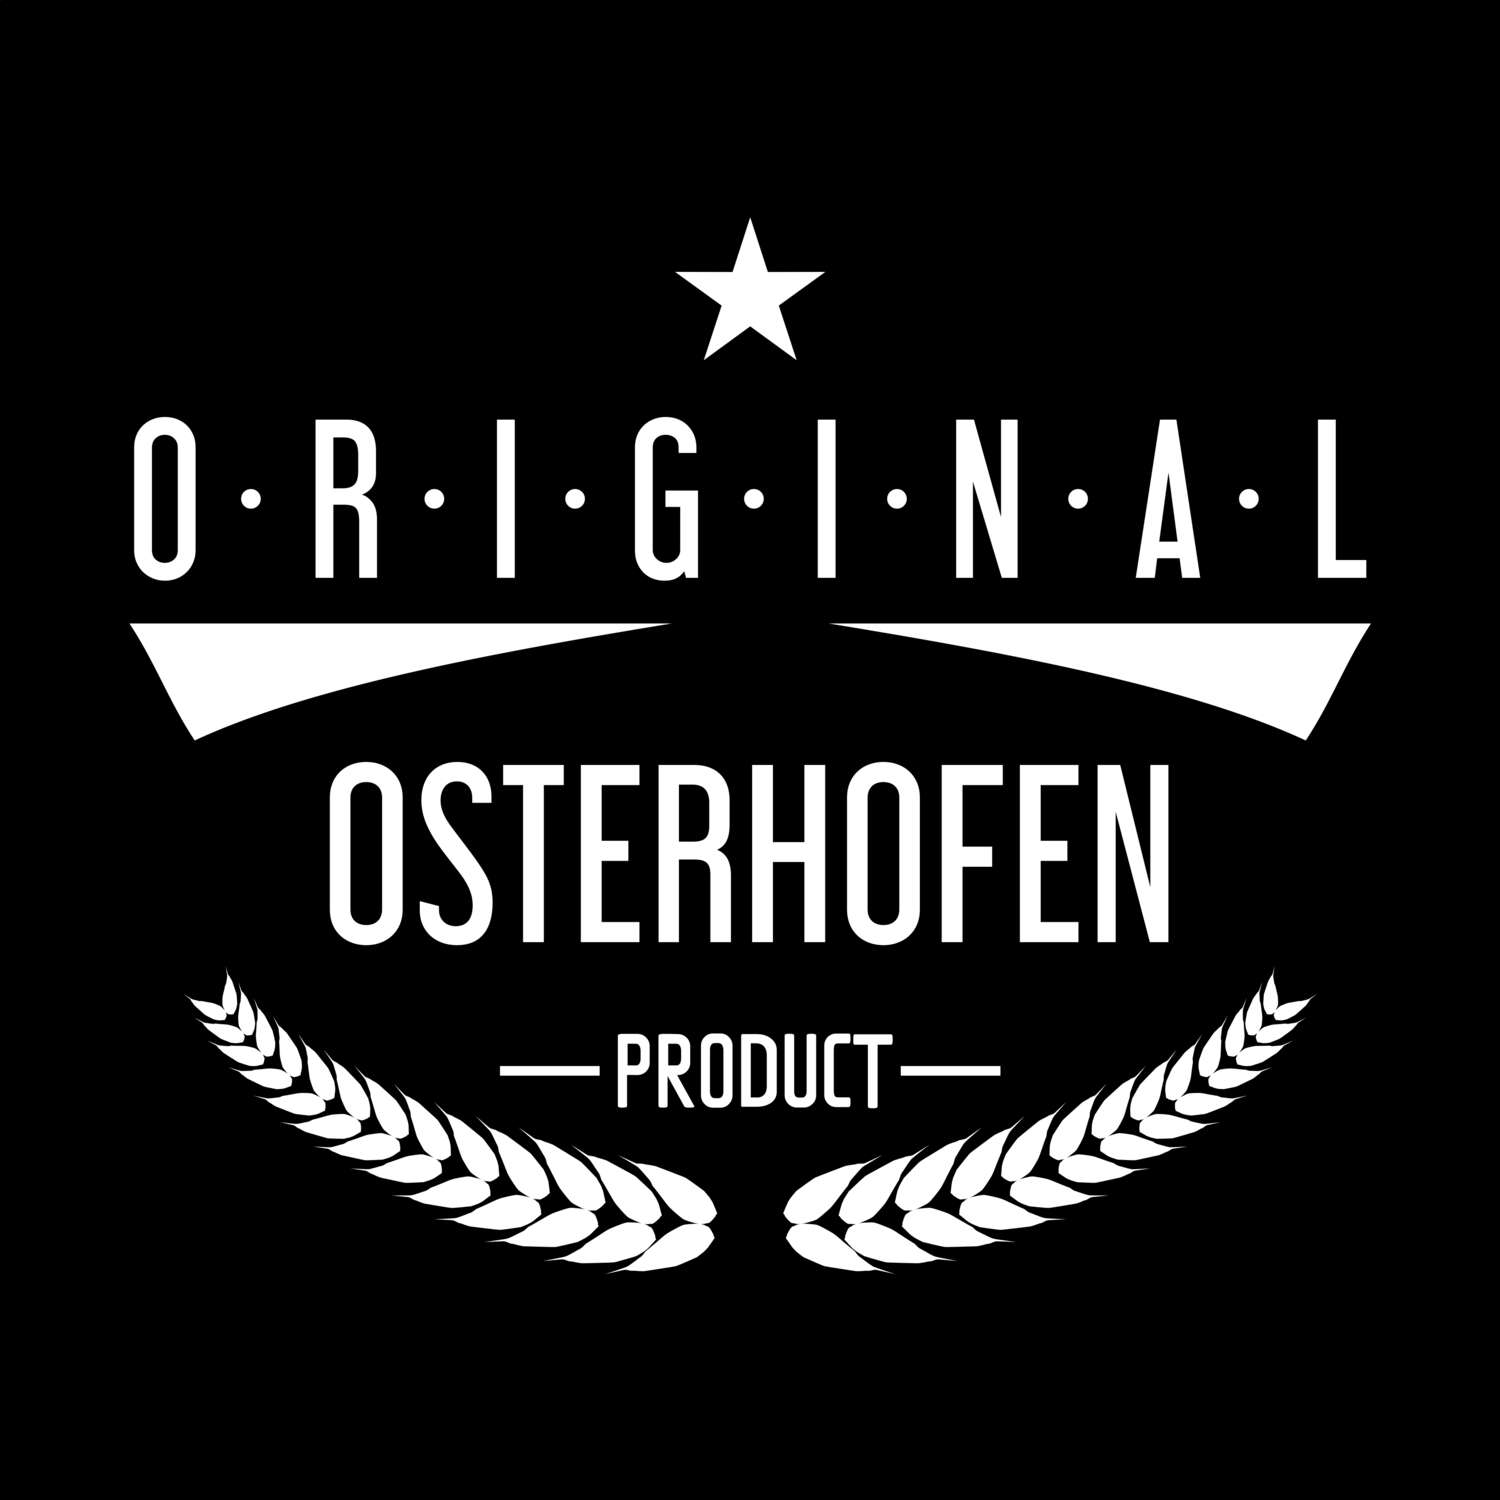 Osterhofen T-Shirt »Original Product«